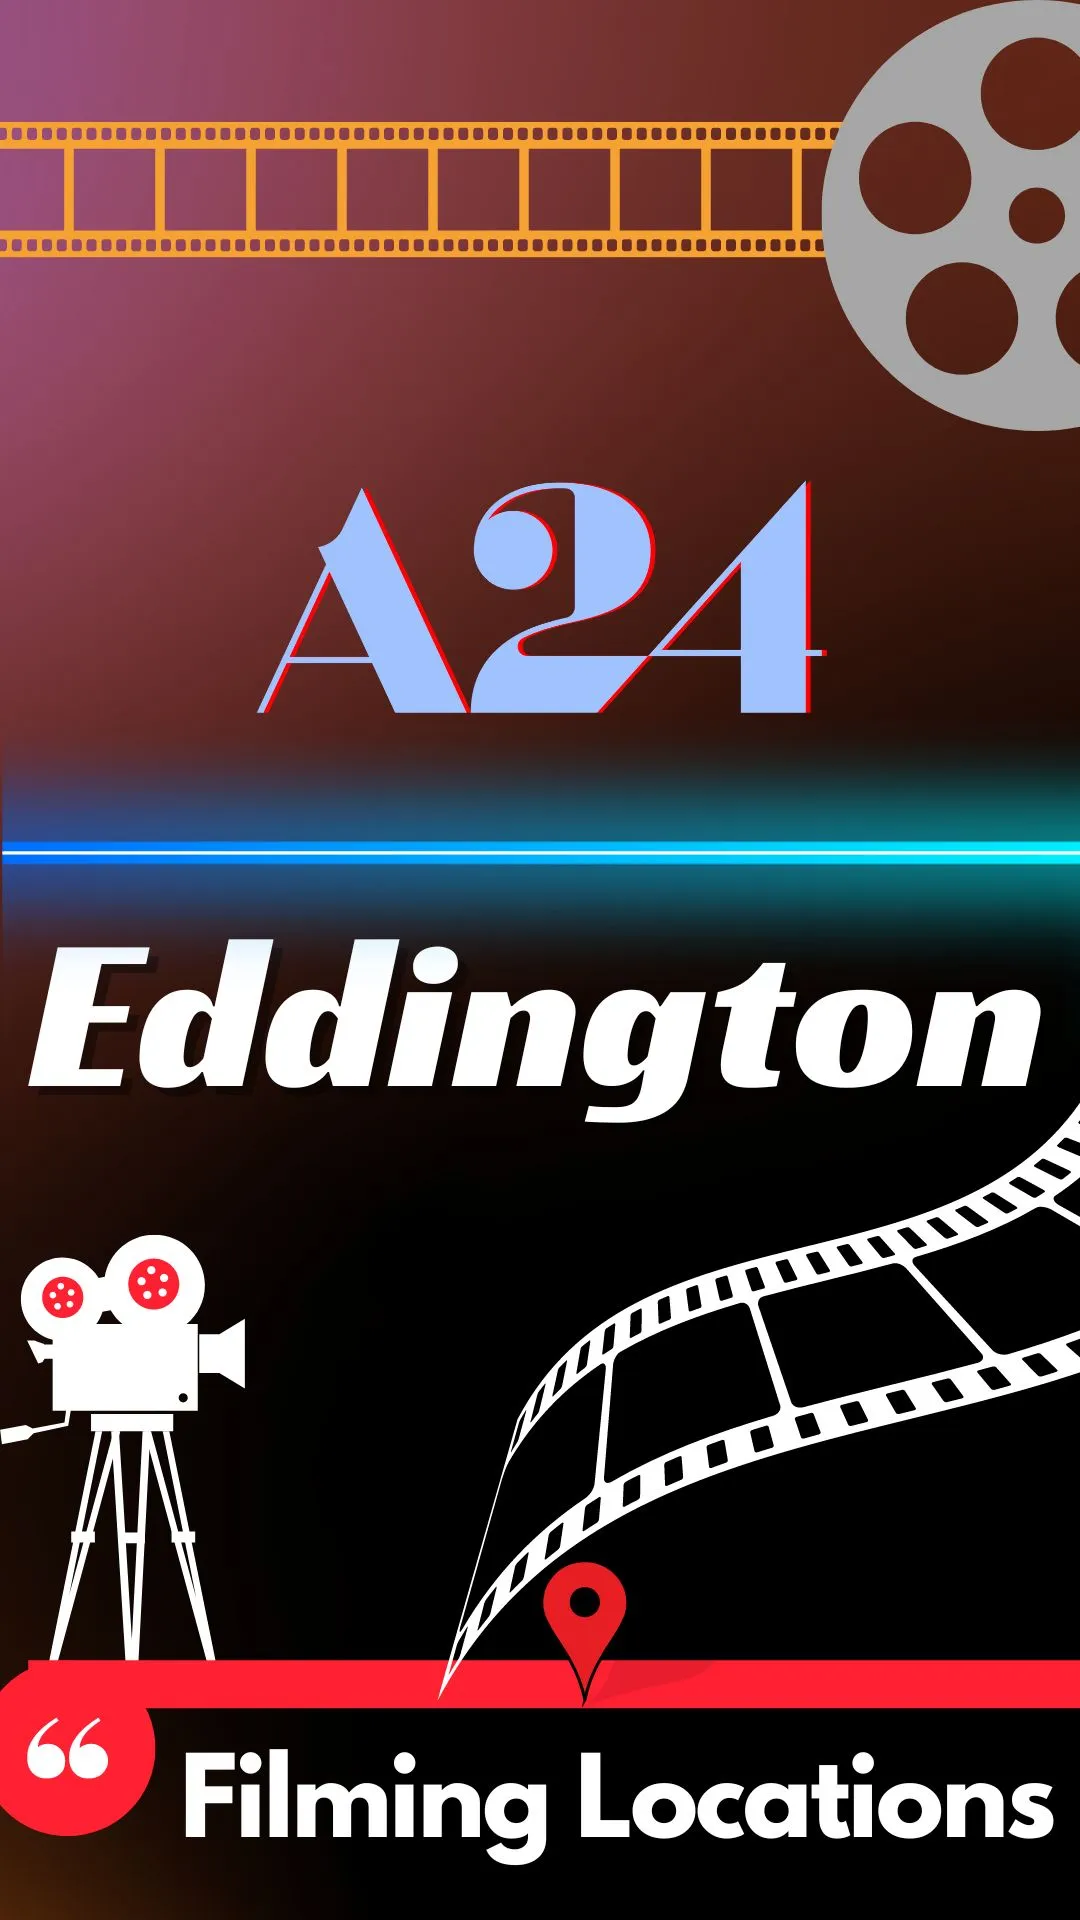 Where Is Eddington Filmed